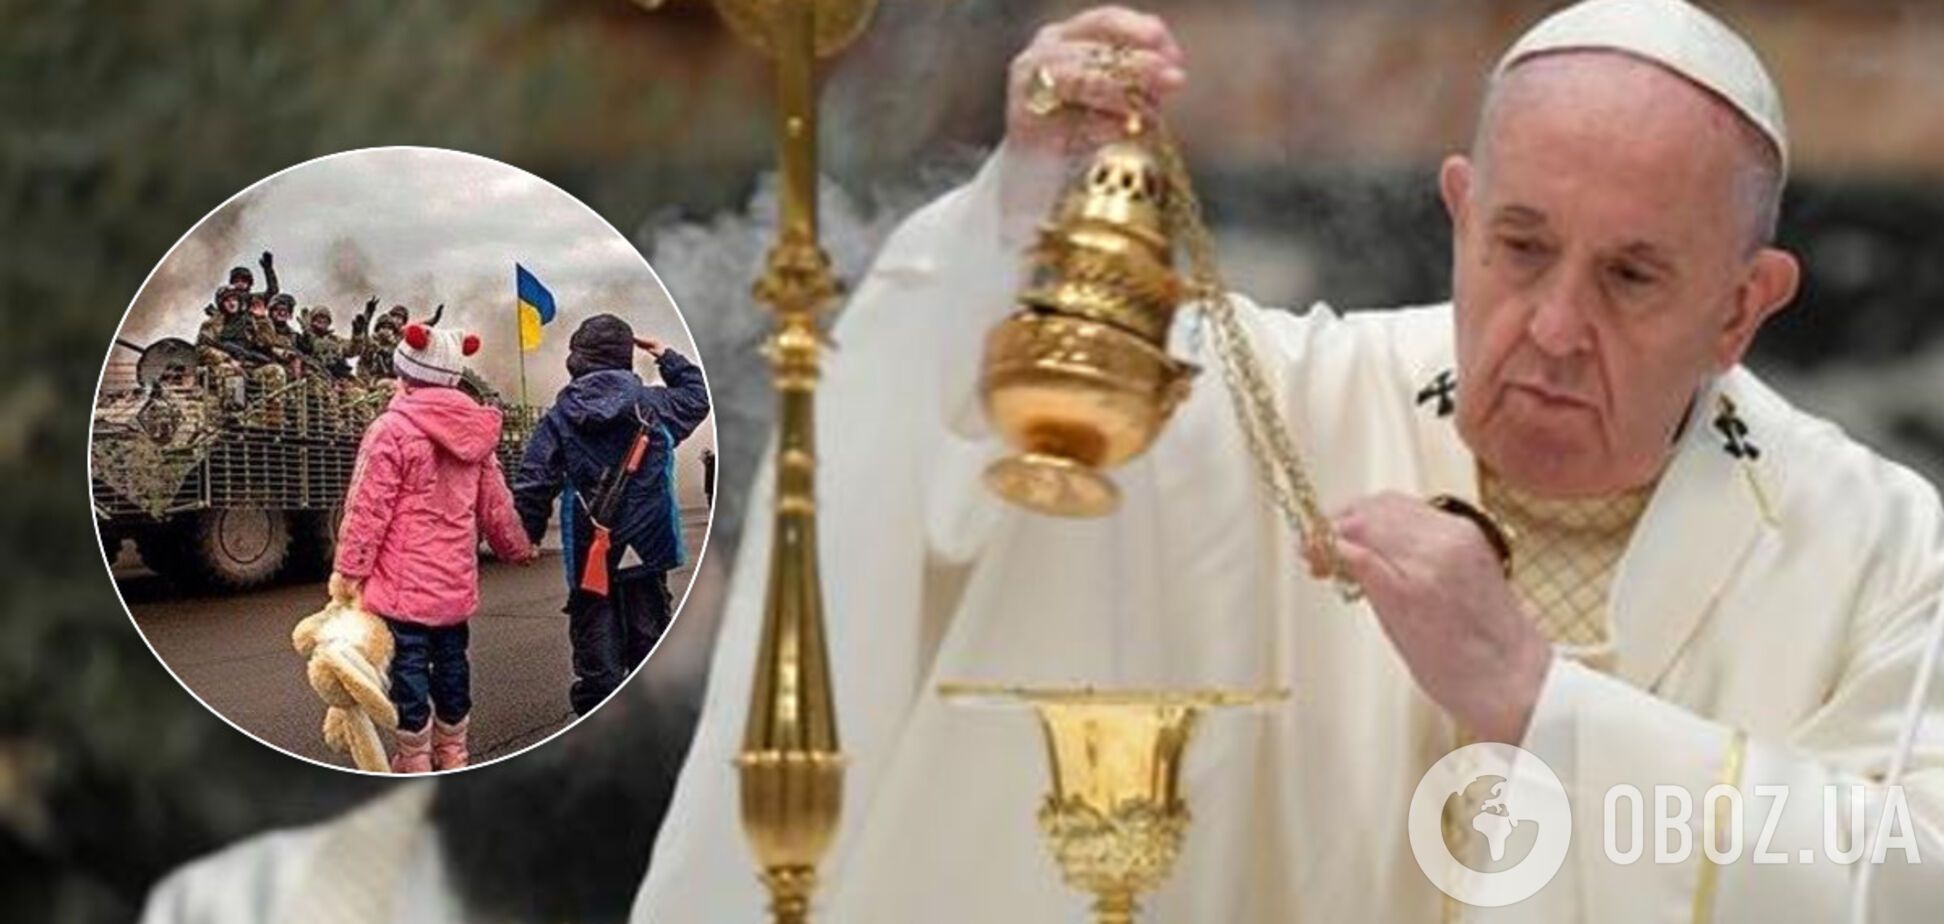 'Нехай припиняться страждання Донбасу!' Папа Римський згадав Україну в пасхальному посланні. Відео